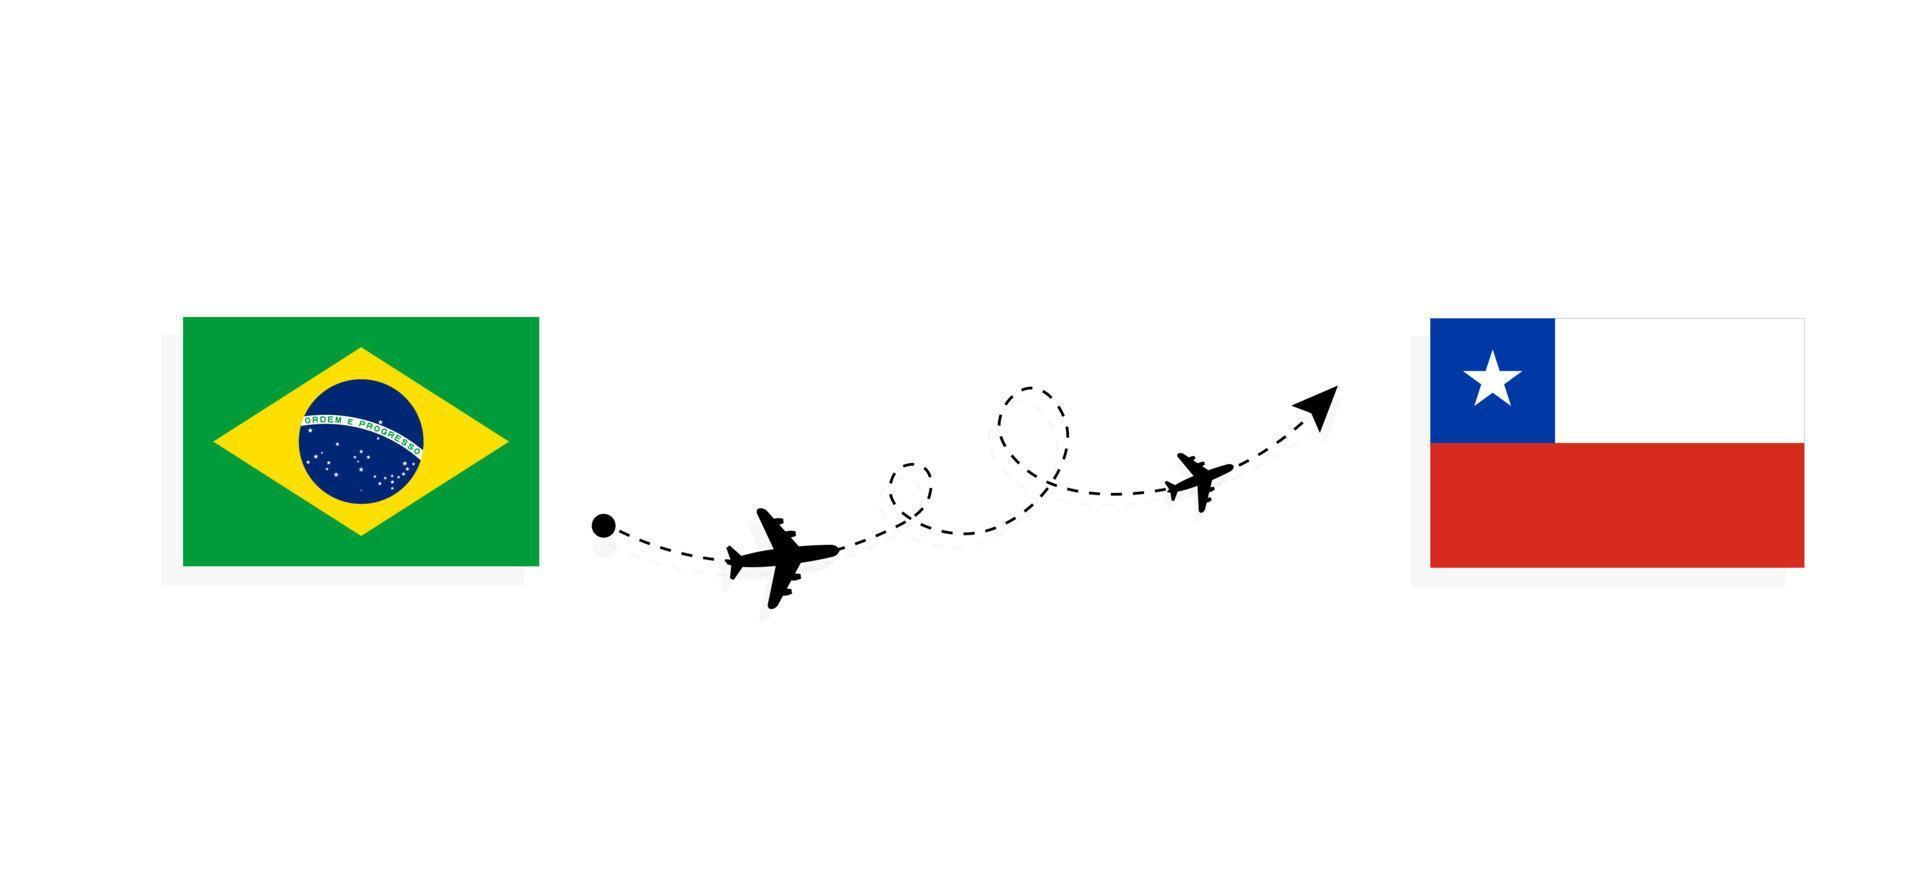 flyg och resor från Brasilien till Chile med passagerarflygplan vektor